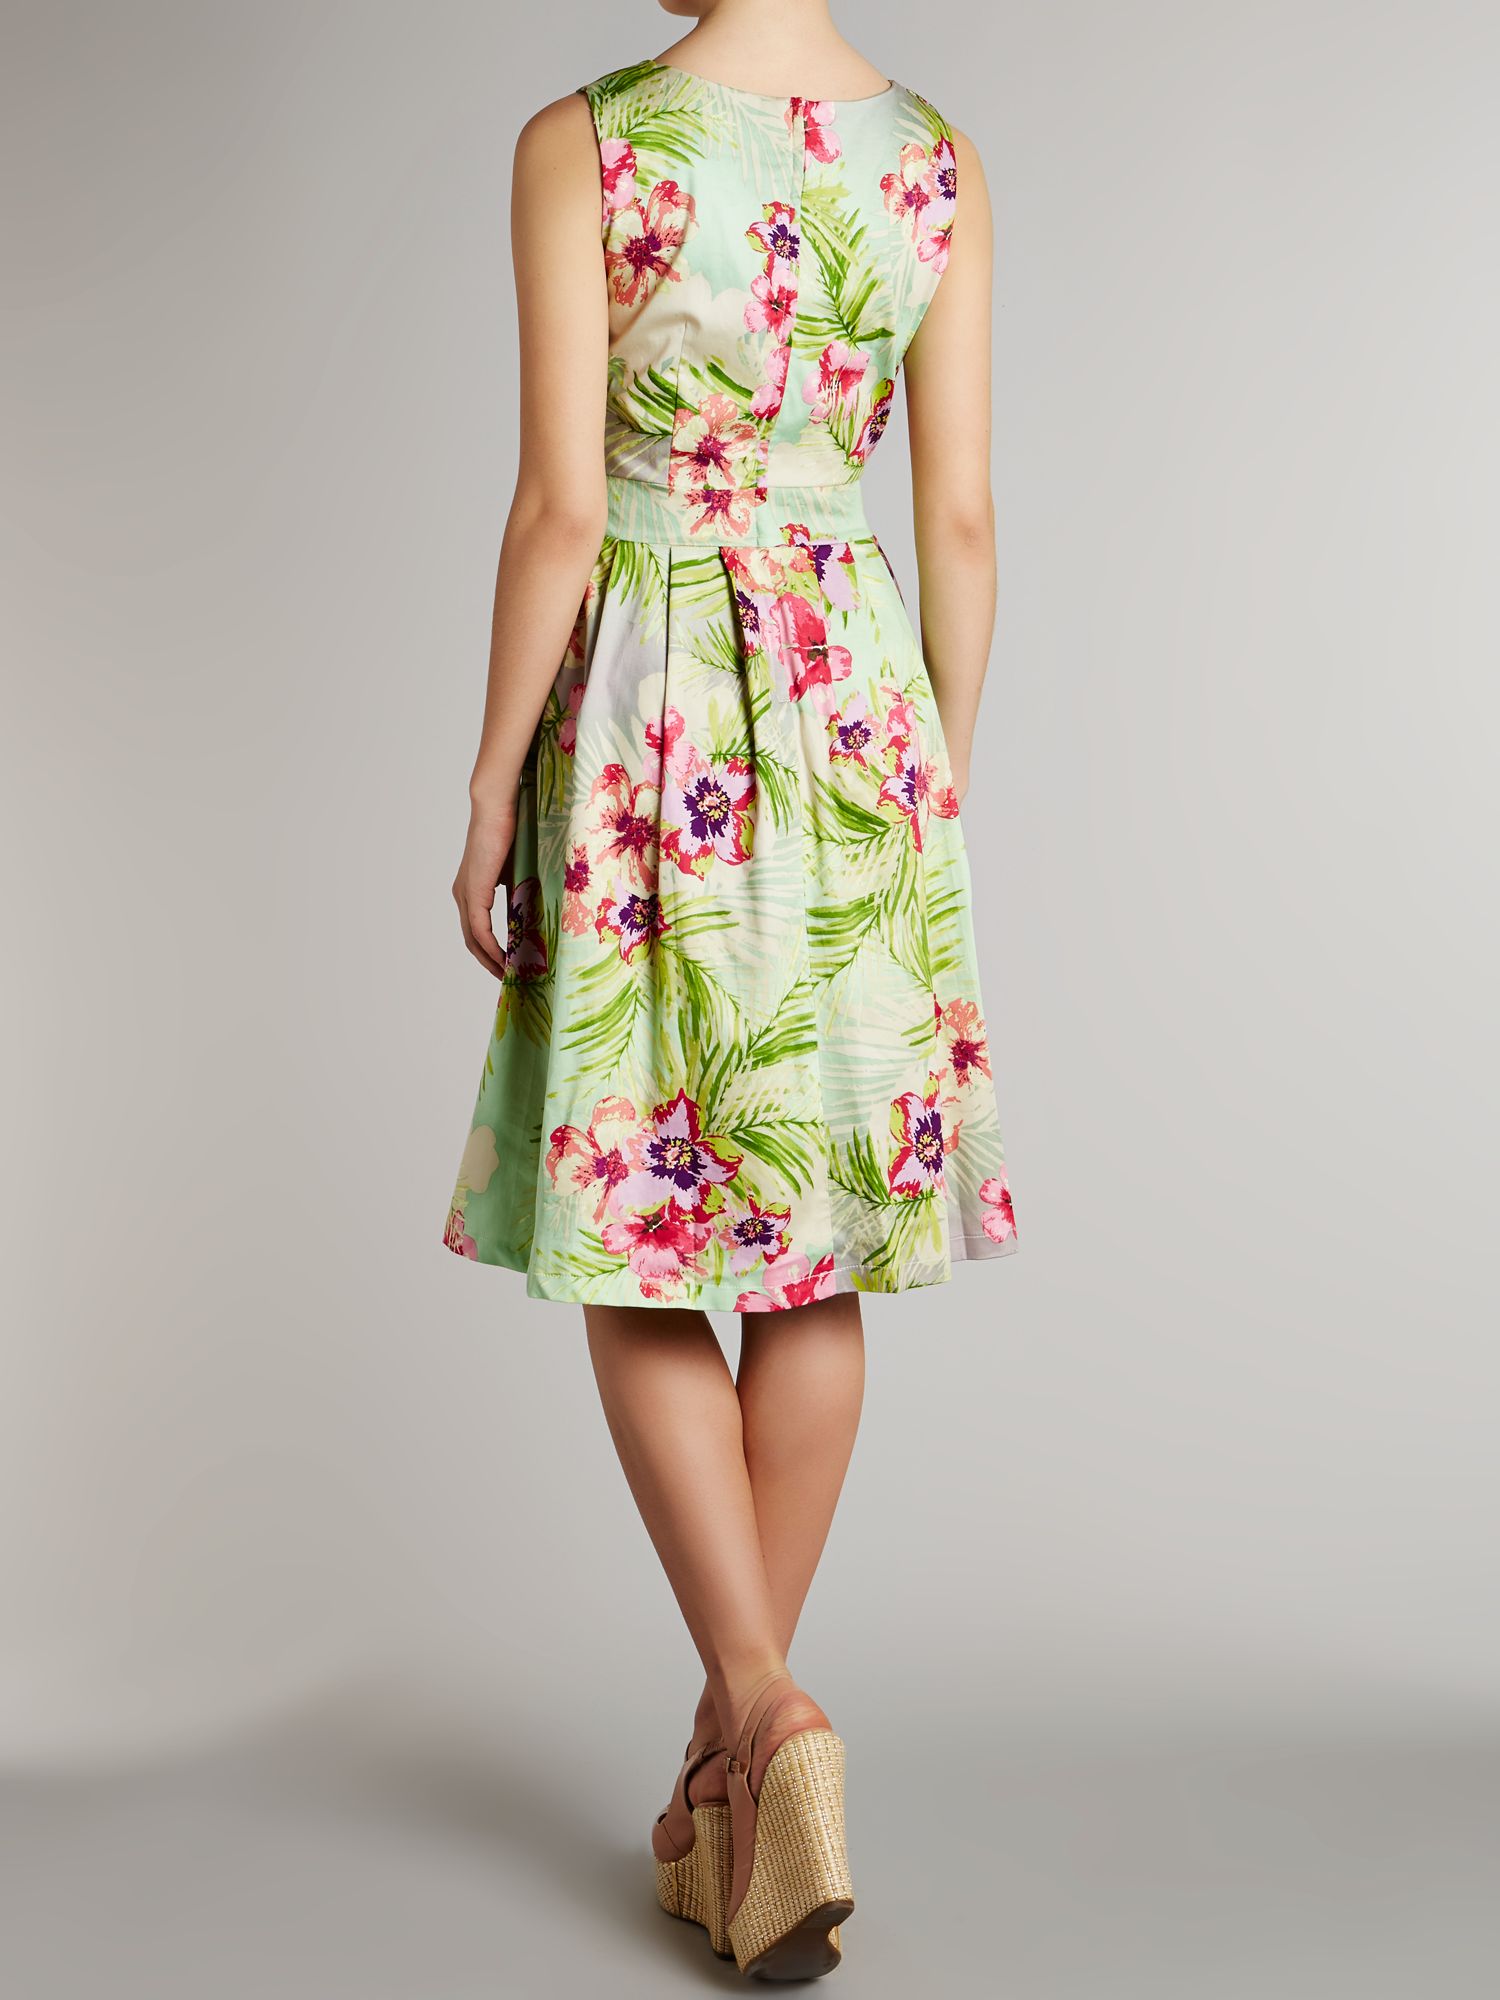 Izabel london Floral Print Classic Midi Dress in Green | Lyst